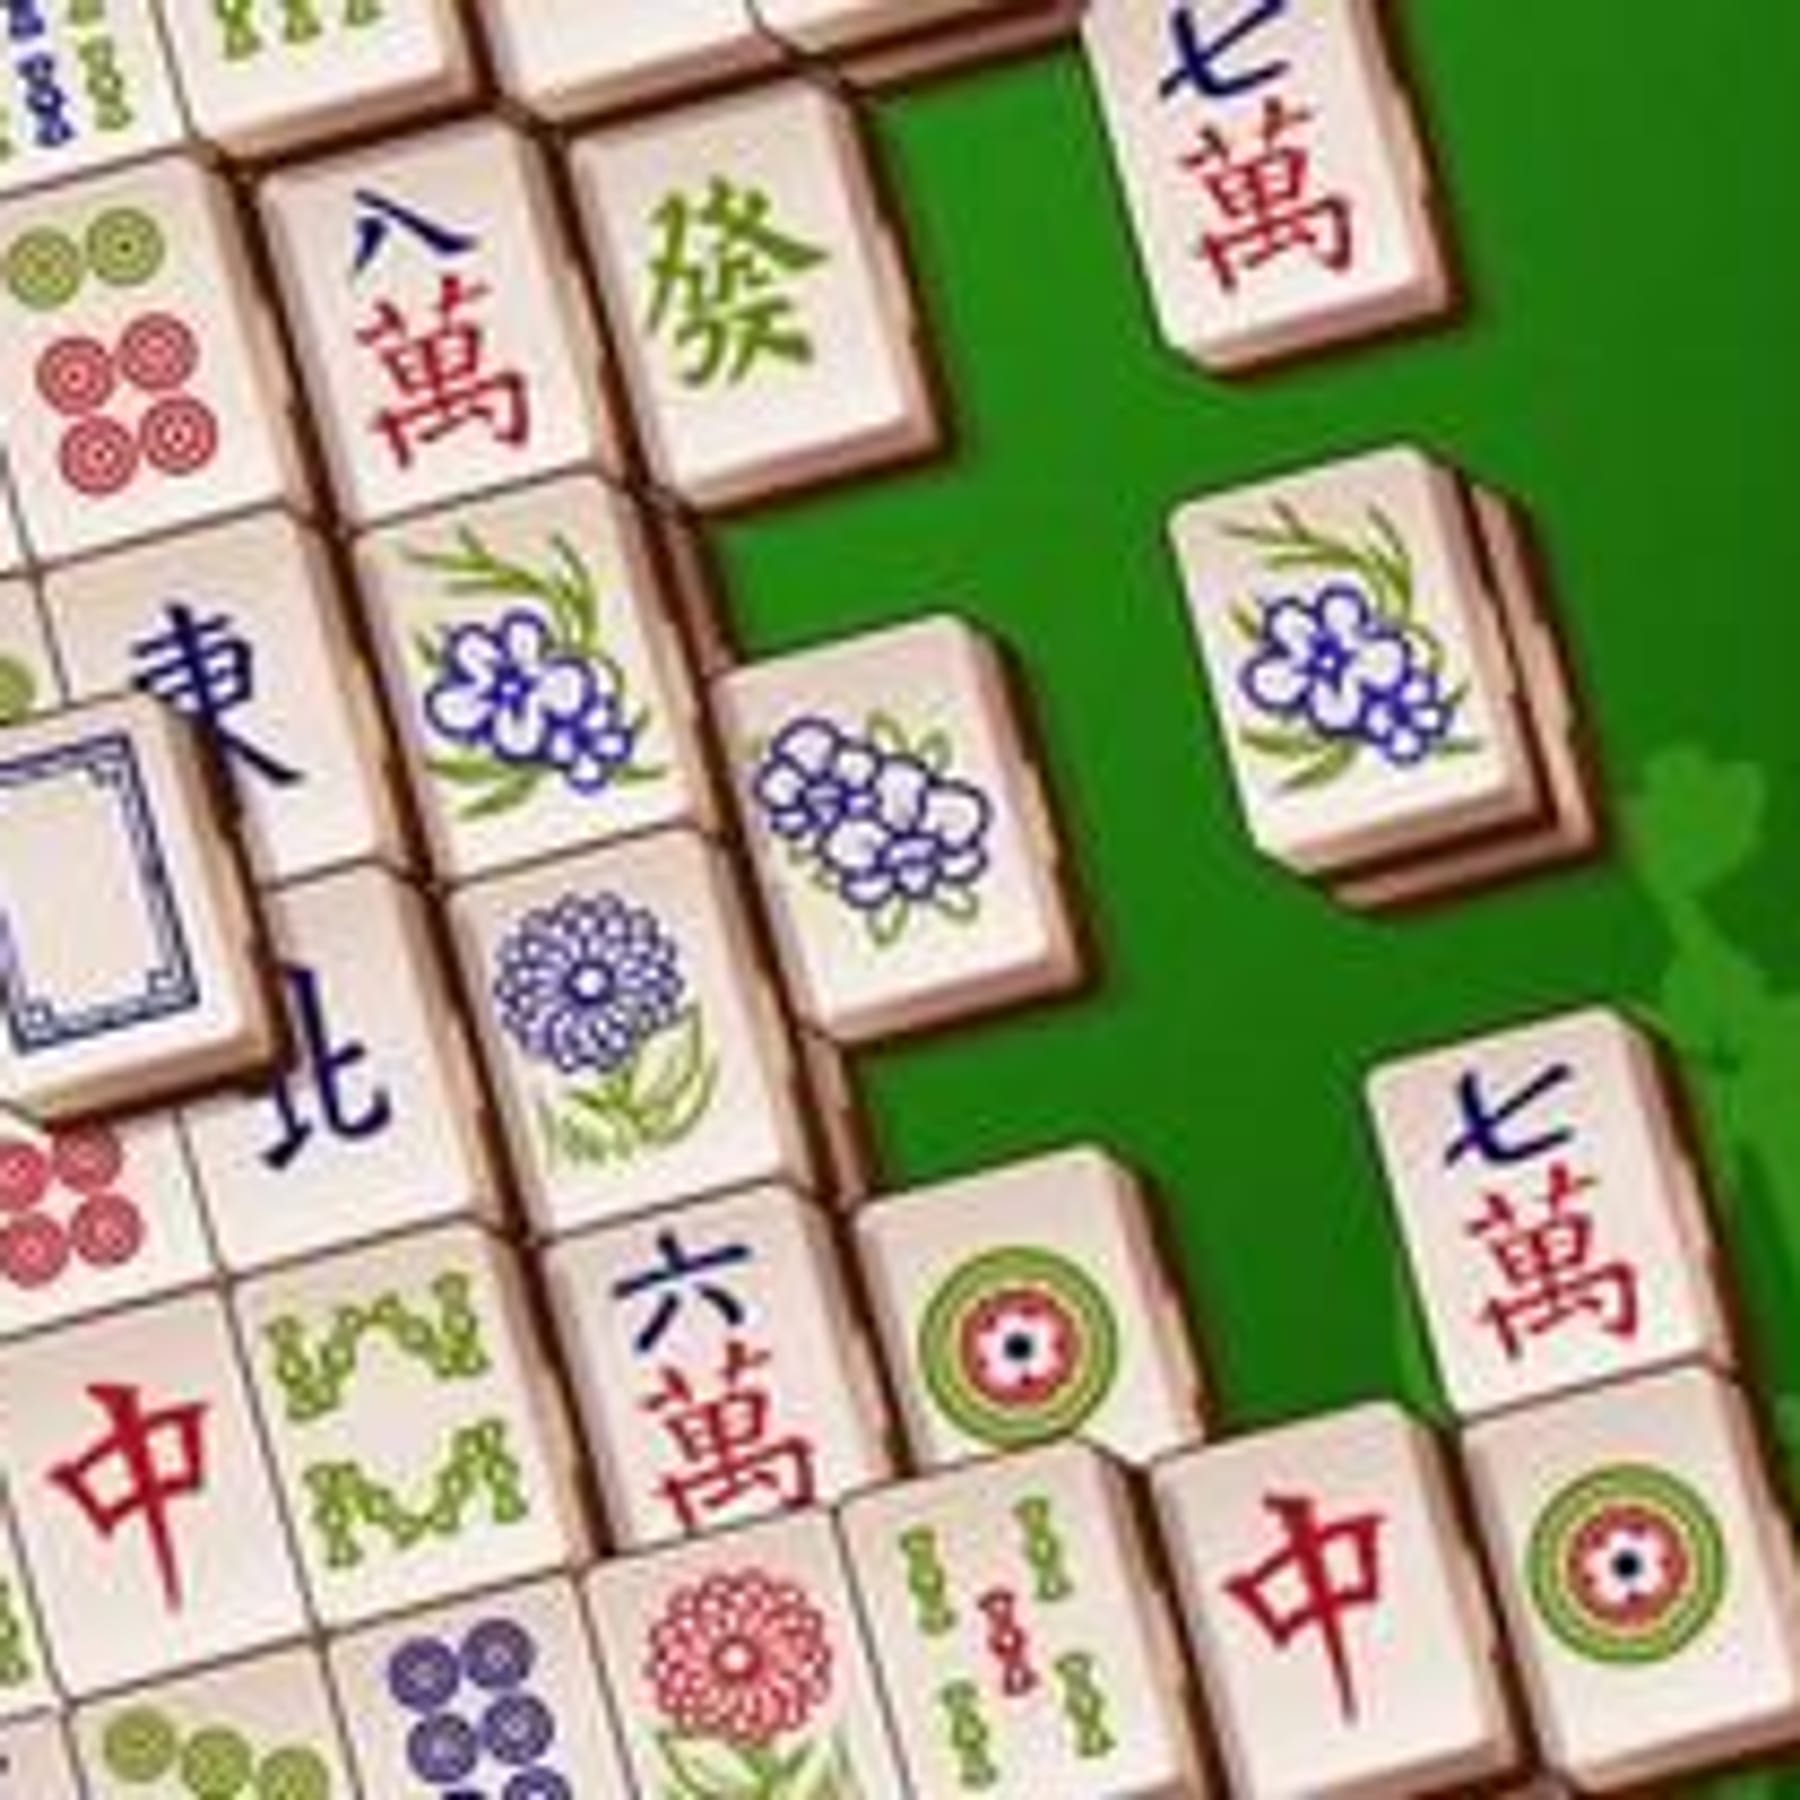 Mahjong  Spiele gratis online